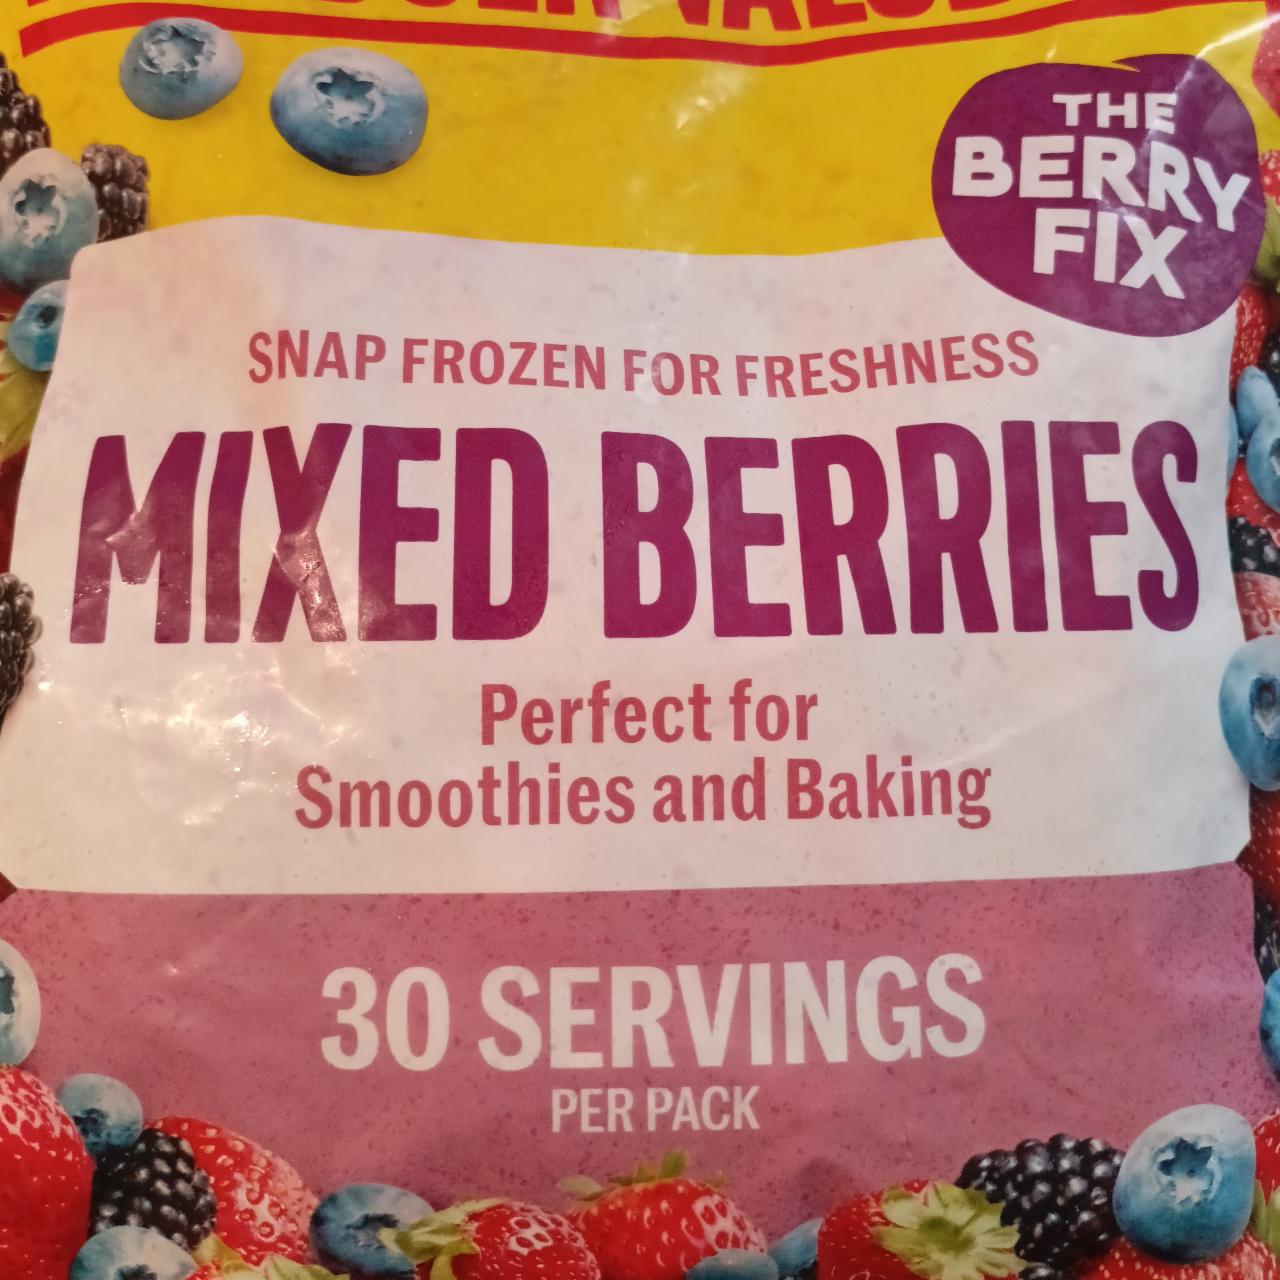 Fotografie - Snap Frozen Mixed Berries The Berry Fix